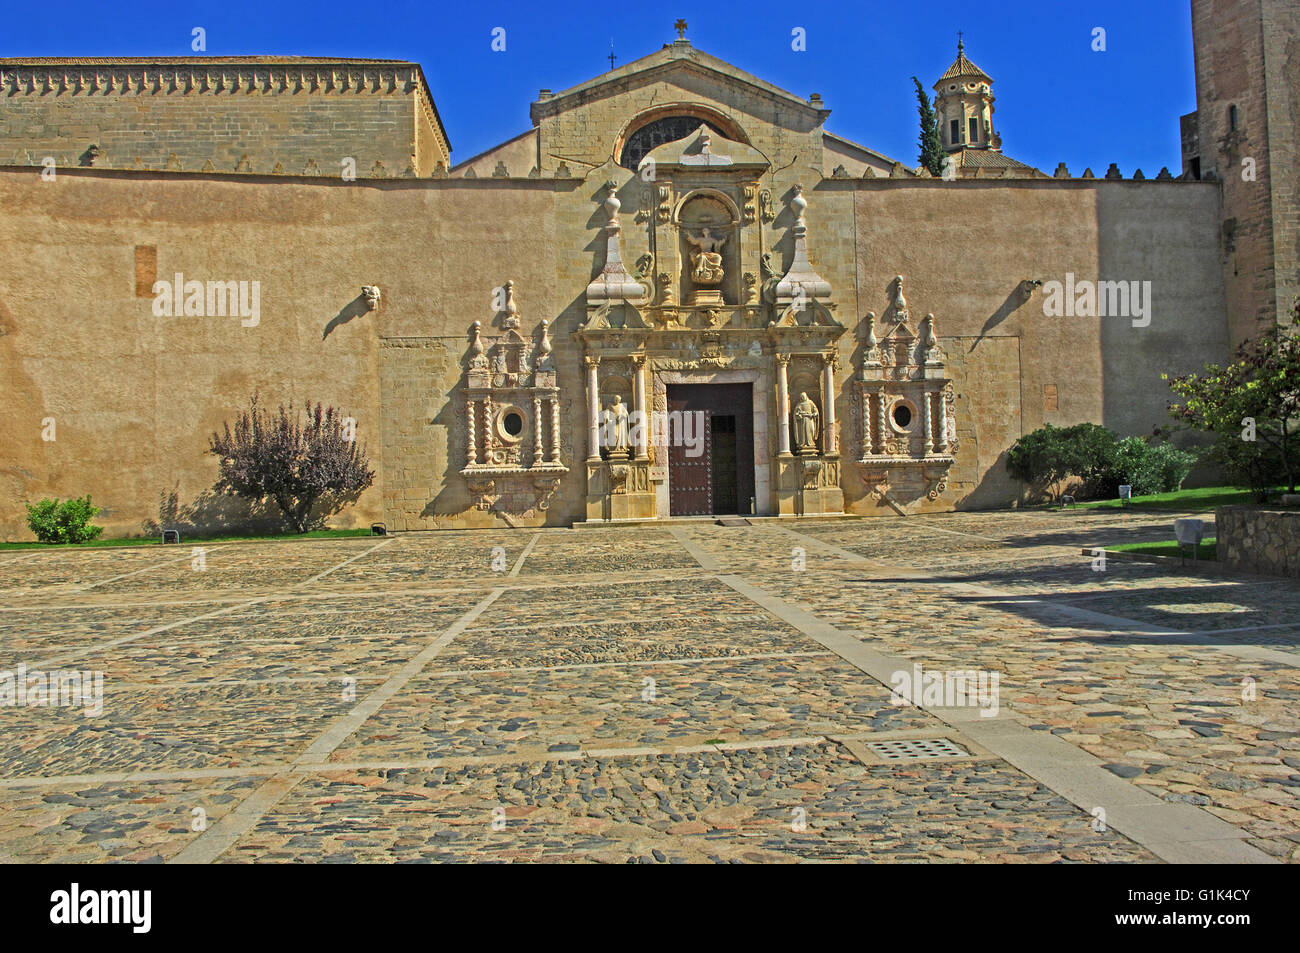 Monestir De Poblet, das Kloster von Santa Maria De Problet, Zisterzienserkloster, Problet, Detail, um Eingang Tür Catalon Stockfoto